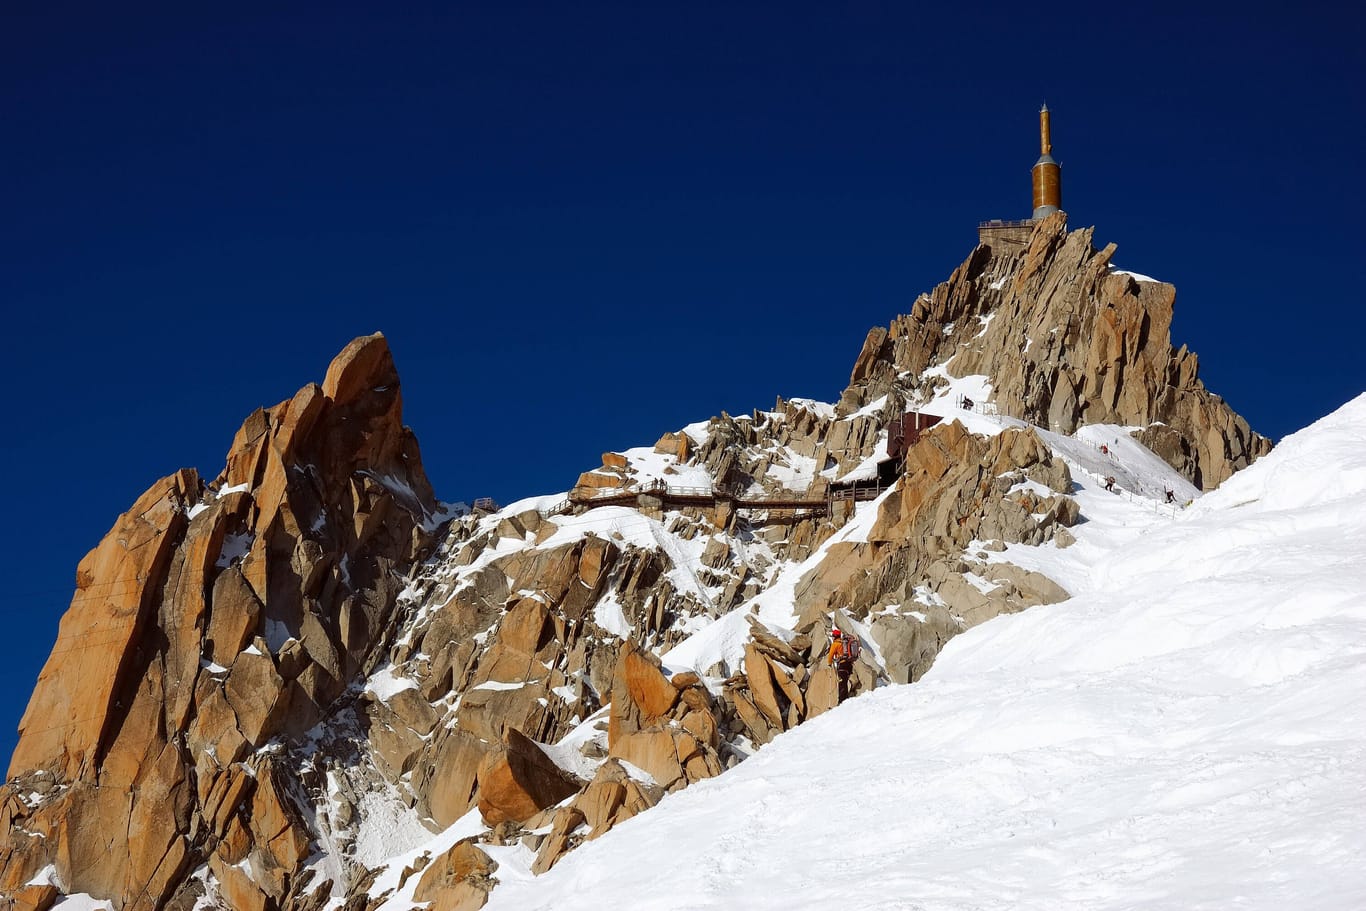 Erdkunde-Quiz: Sind Sie ein echter Alpen-Experte? Beweisen Sie es doch!